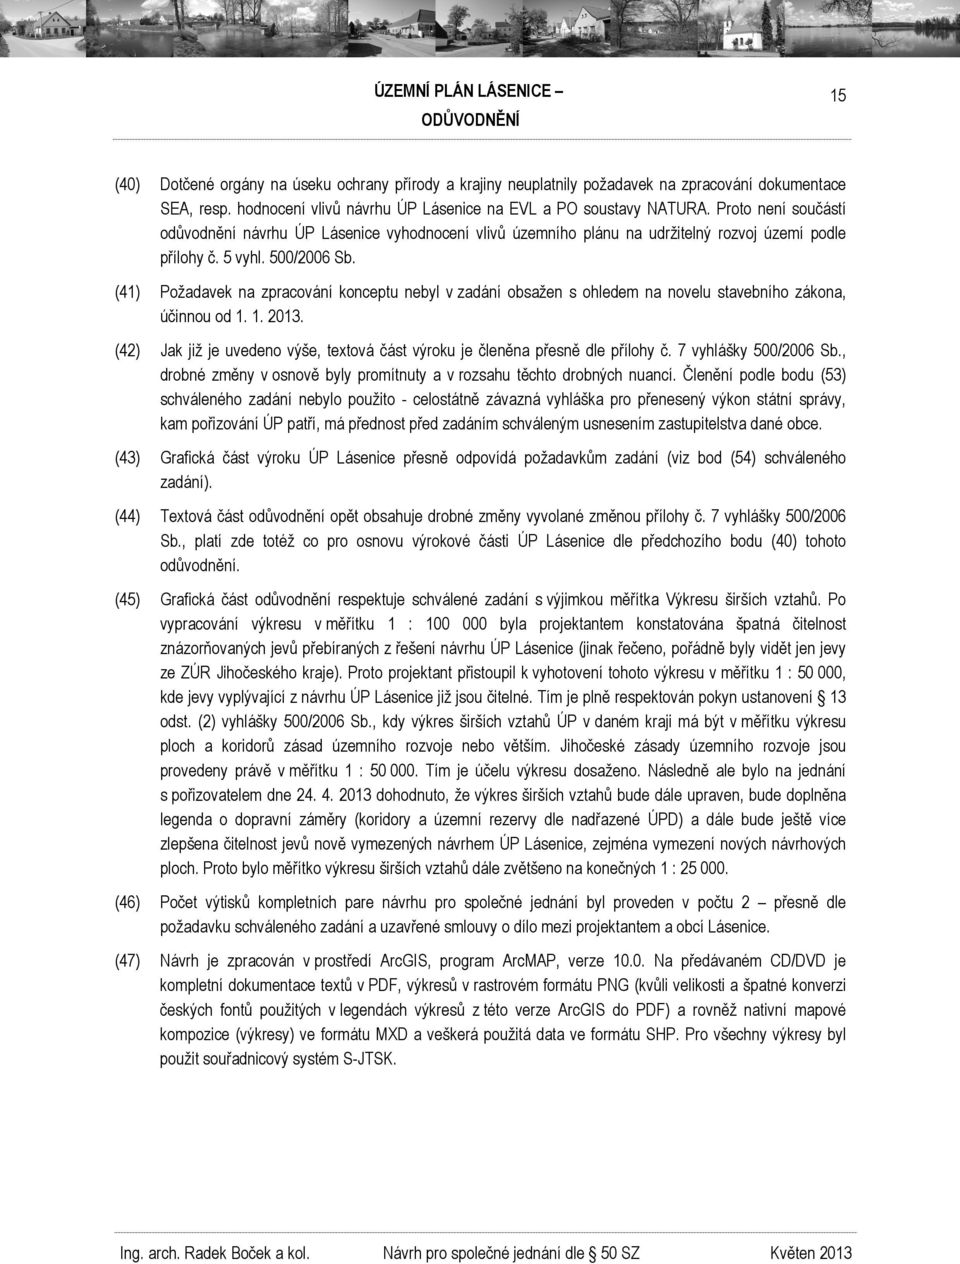 (41) Požadavek na zpracování konceptu nebyl v zadání obsažen s ohledem na novelu stavebního zákona, účinnou od 1. 1. 2013.